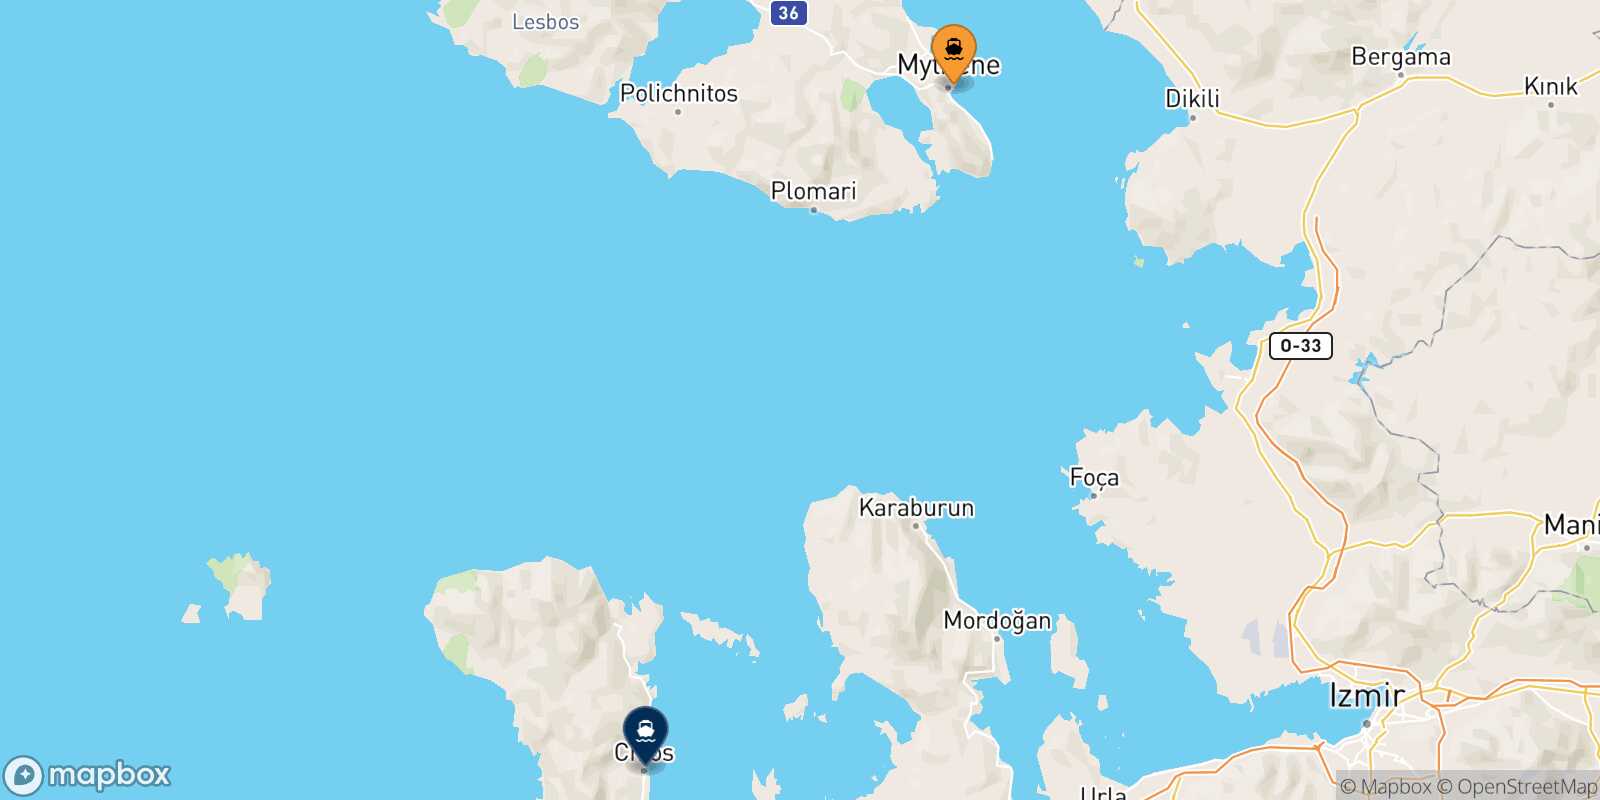 Mapa de la ruta Mytilene (Lesvos) Quios